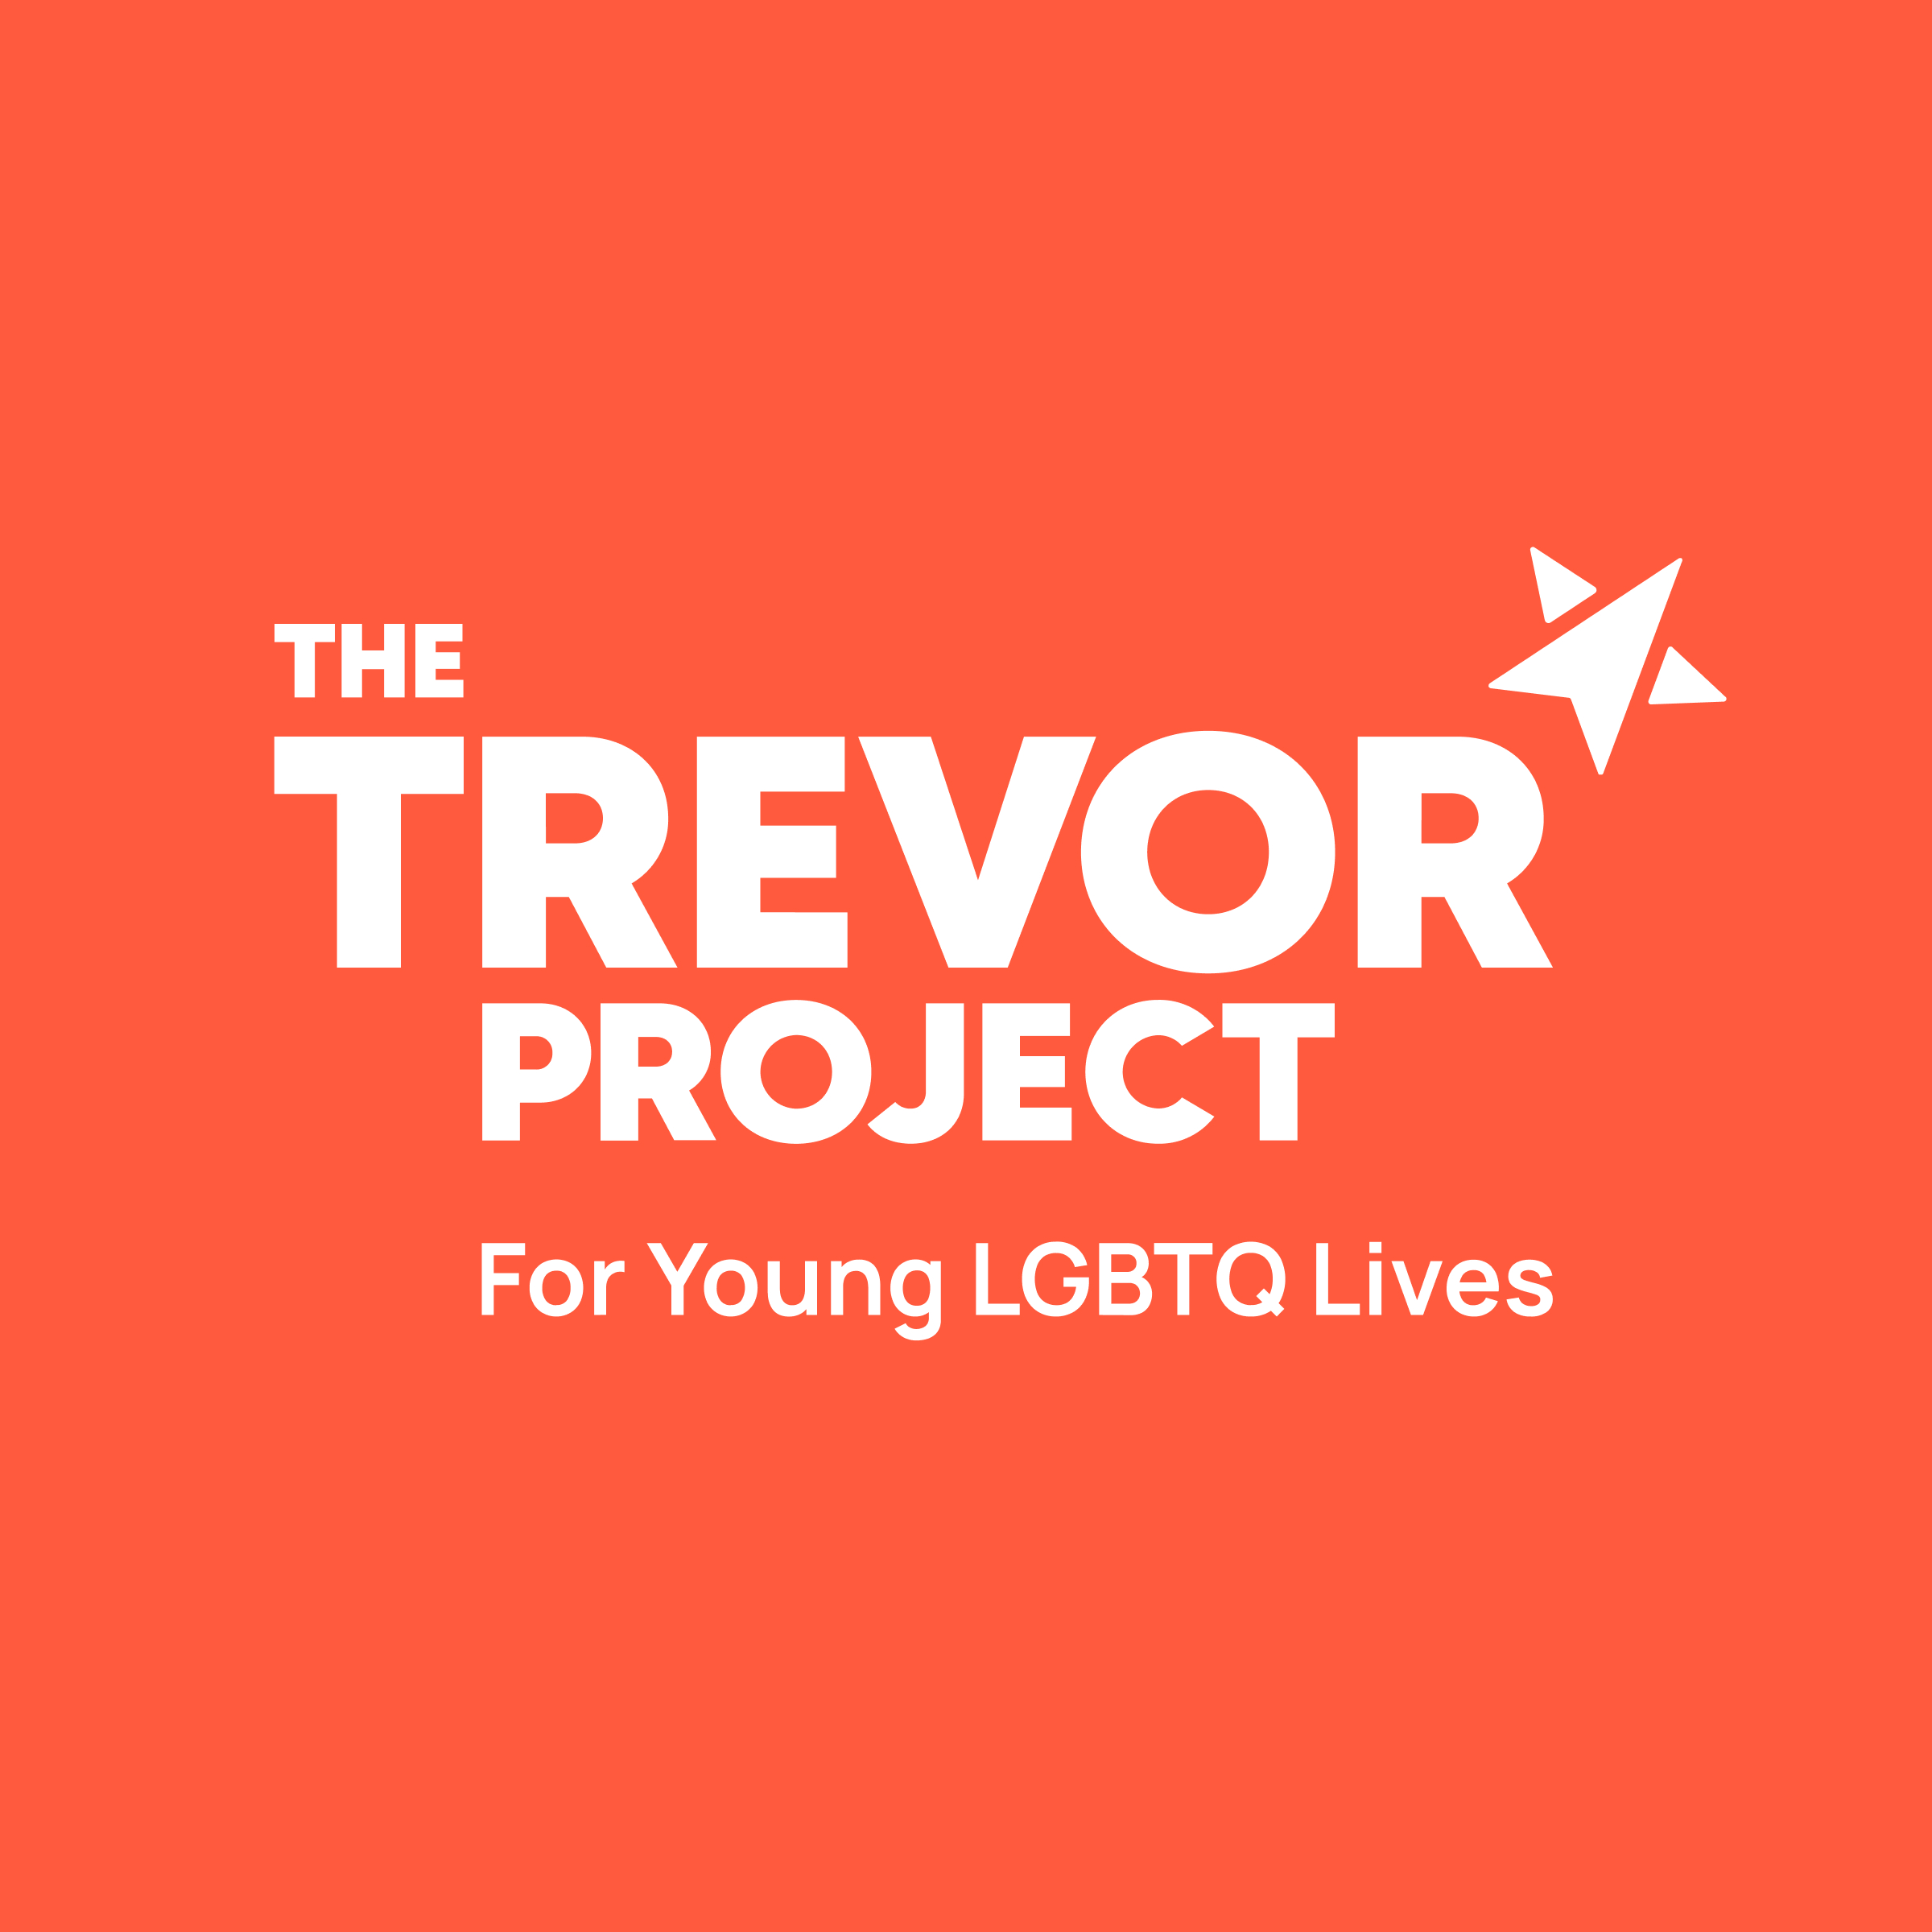 www.thetrevorproject.org